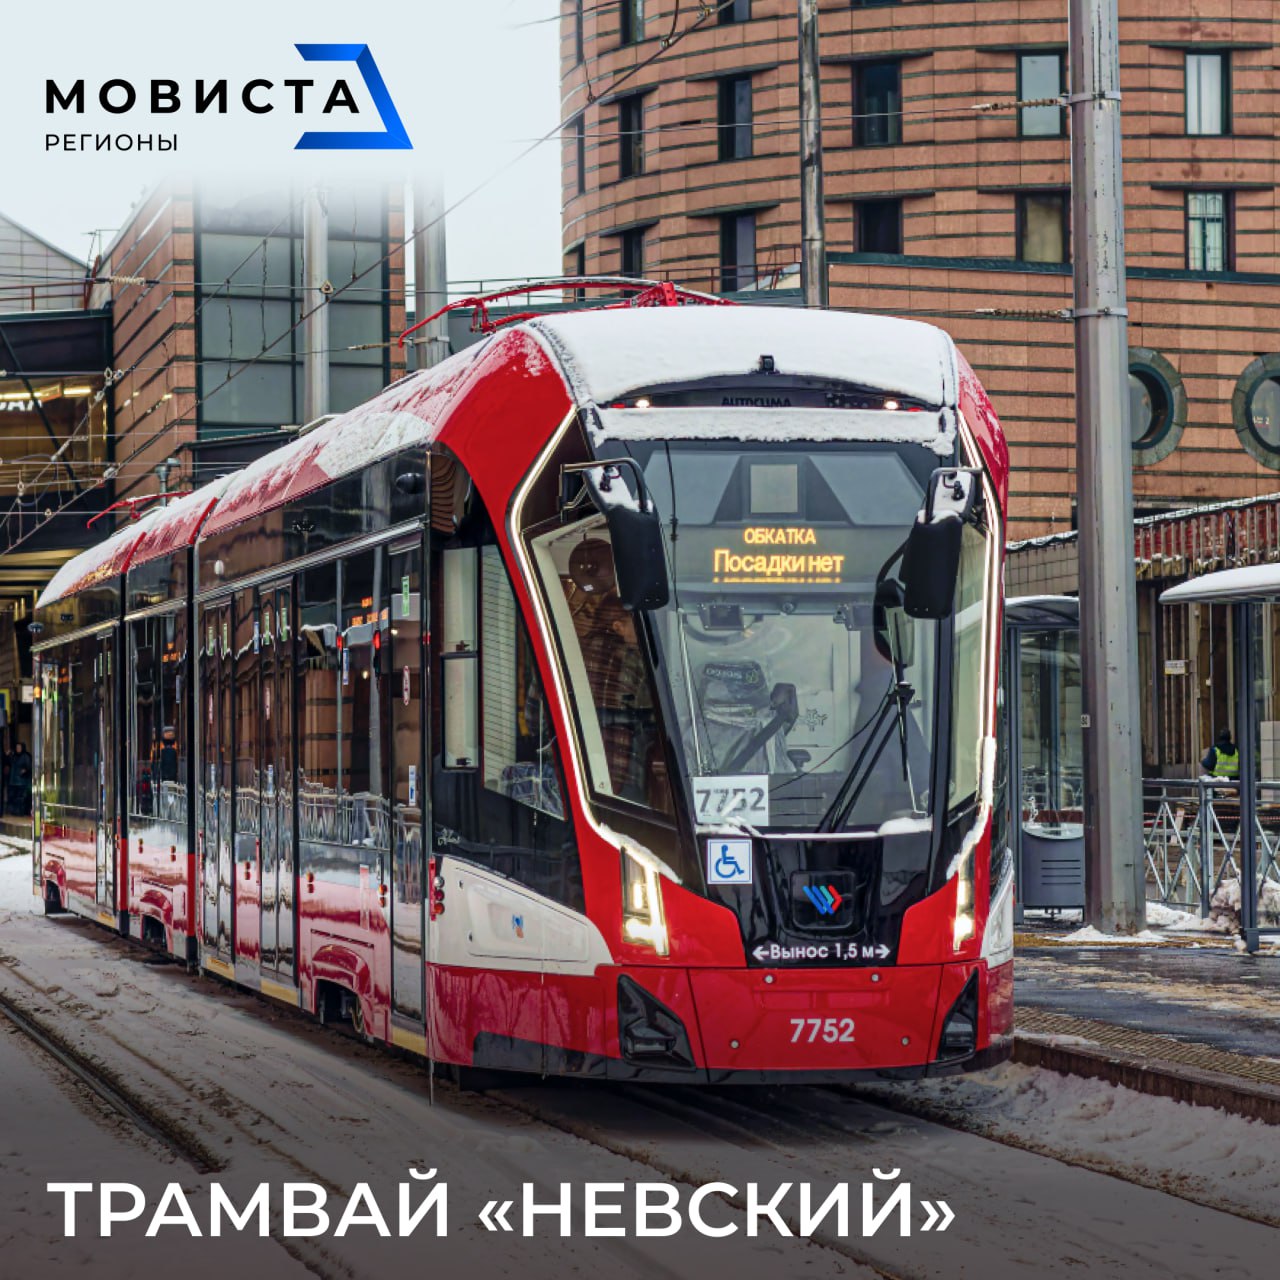 Трамвай в Солнечный Красноярску бы не помешал. Да и связь между берегами тоже нужна